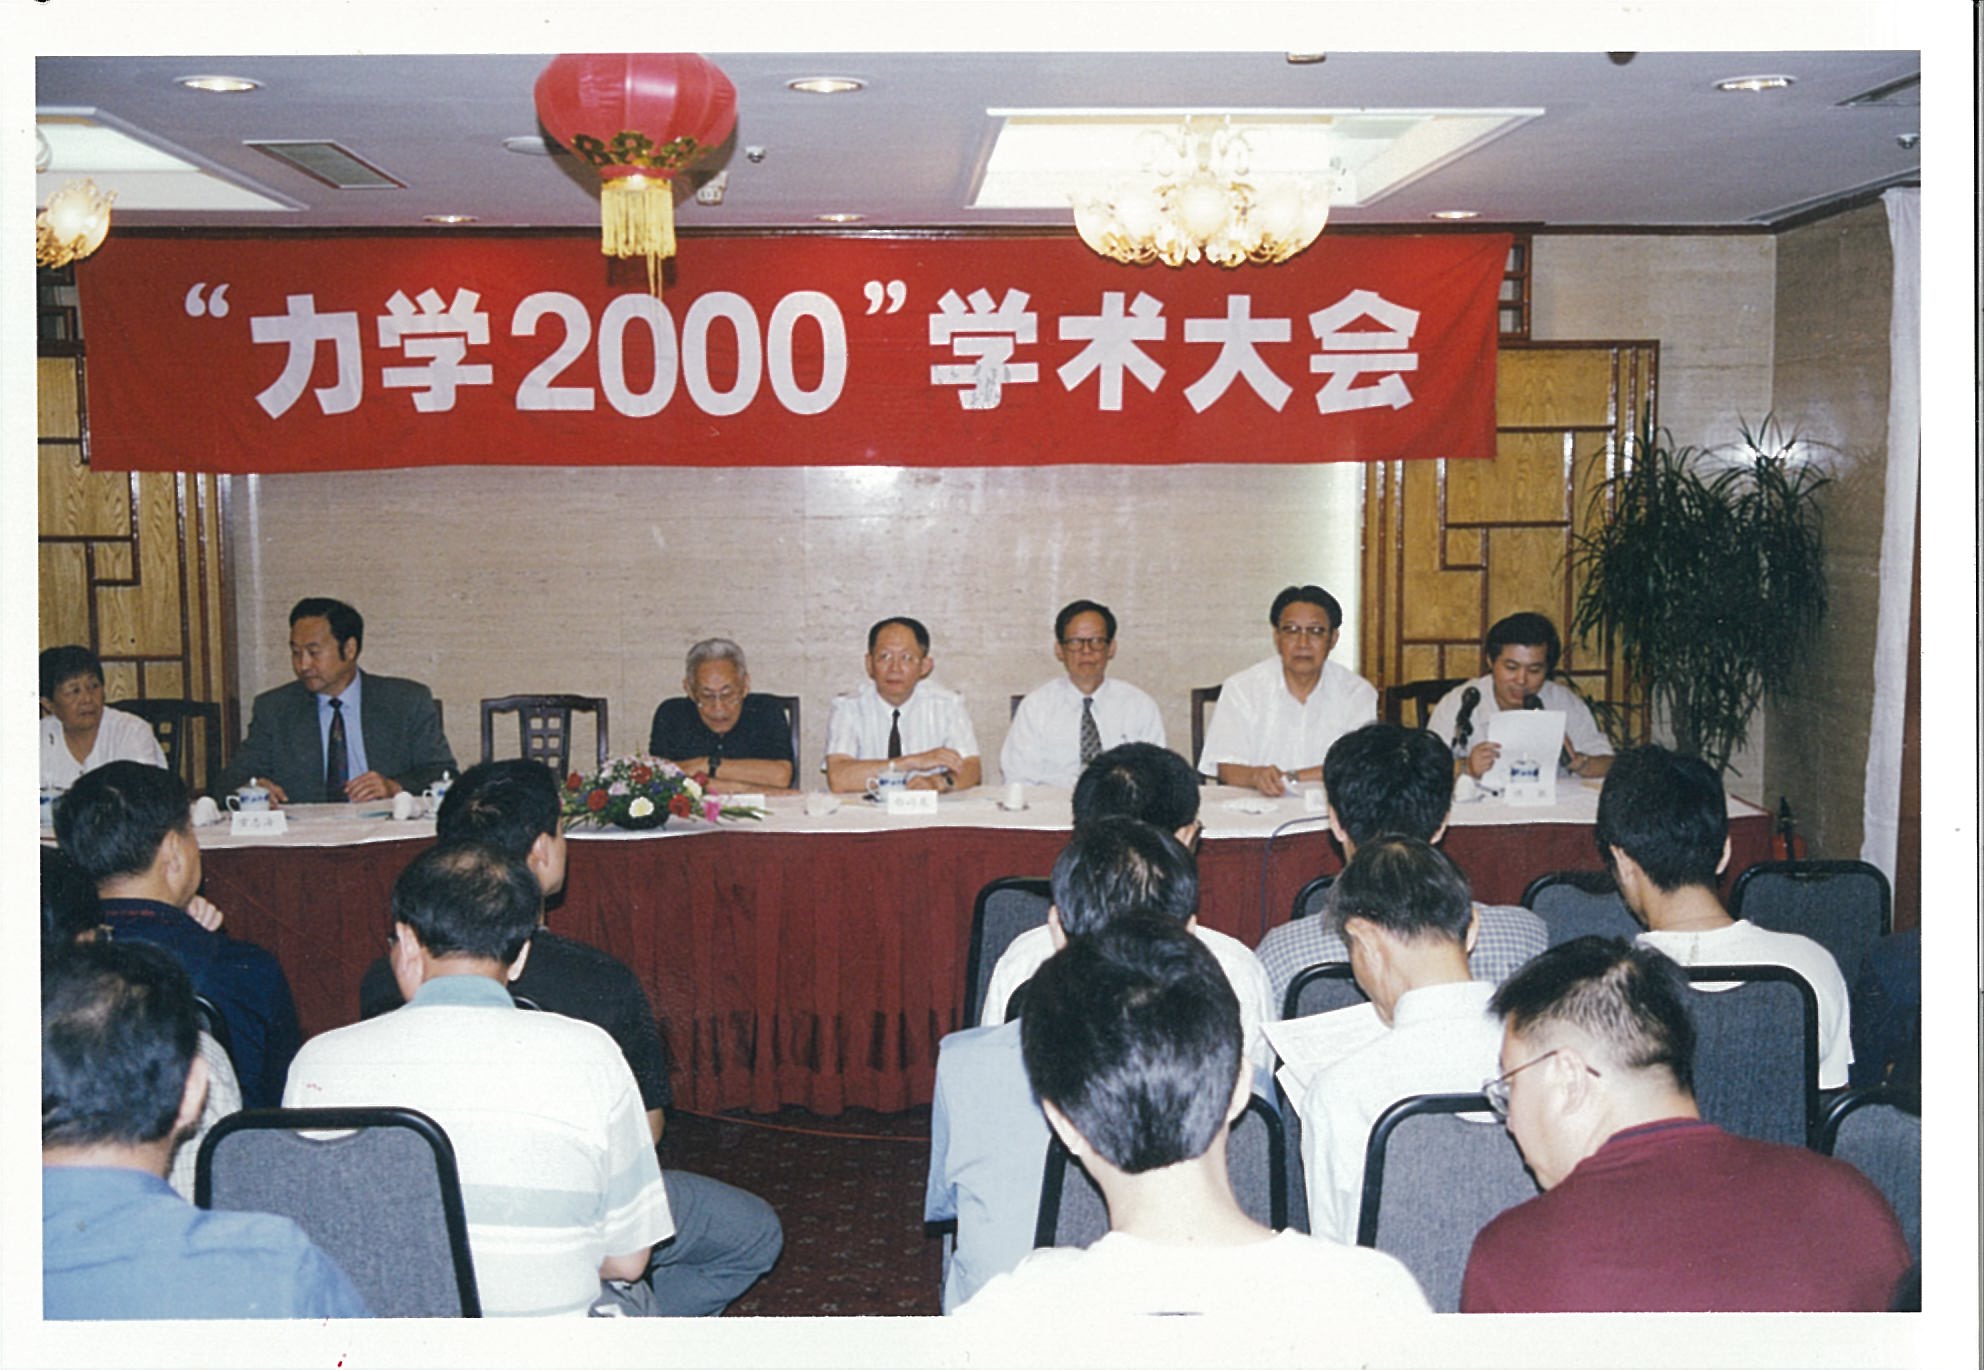 “力学2000学术大会”在北京奥林匹克饭店召开（2000年8月22日~24日），白以龙参加会议。